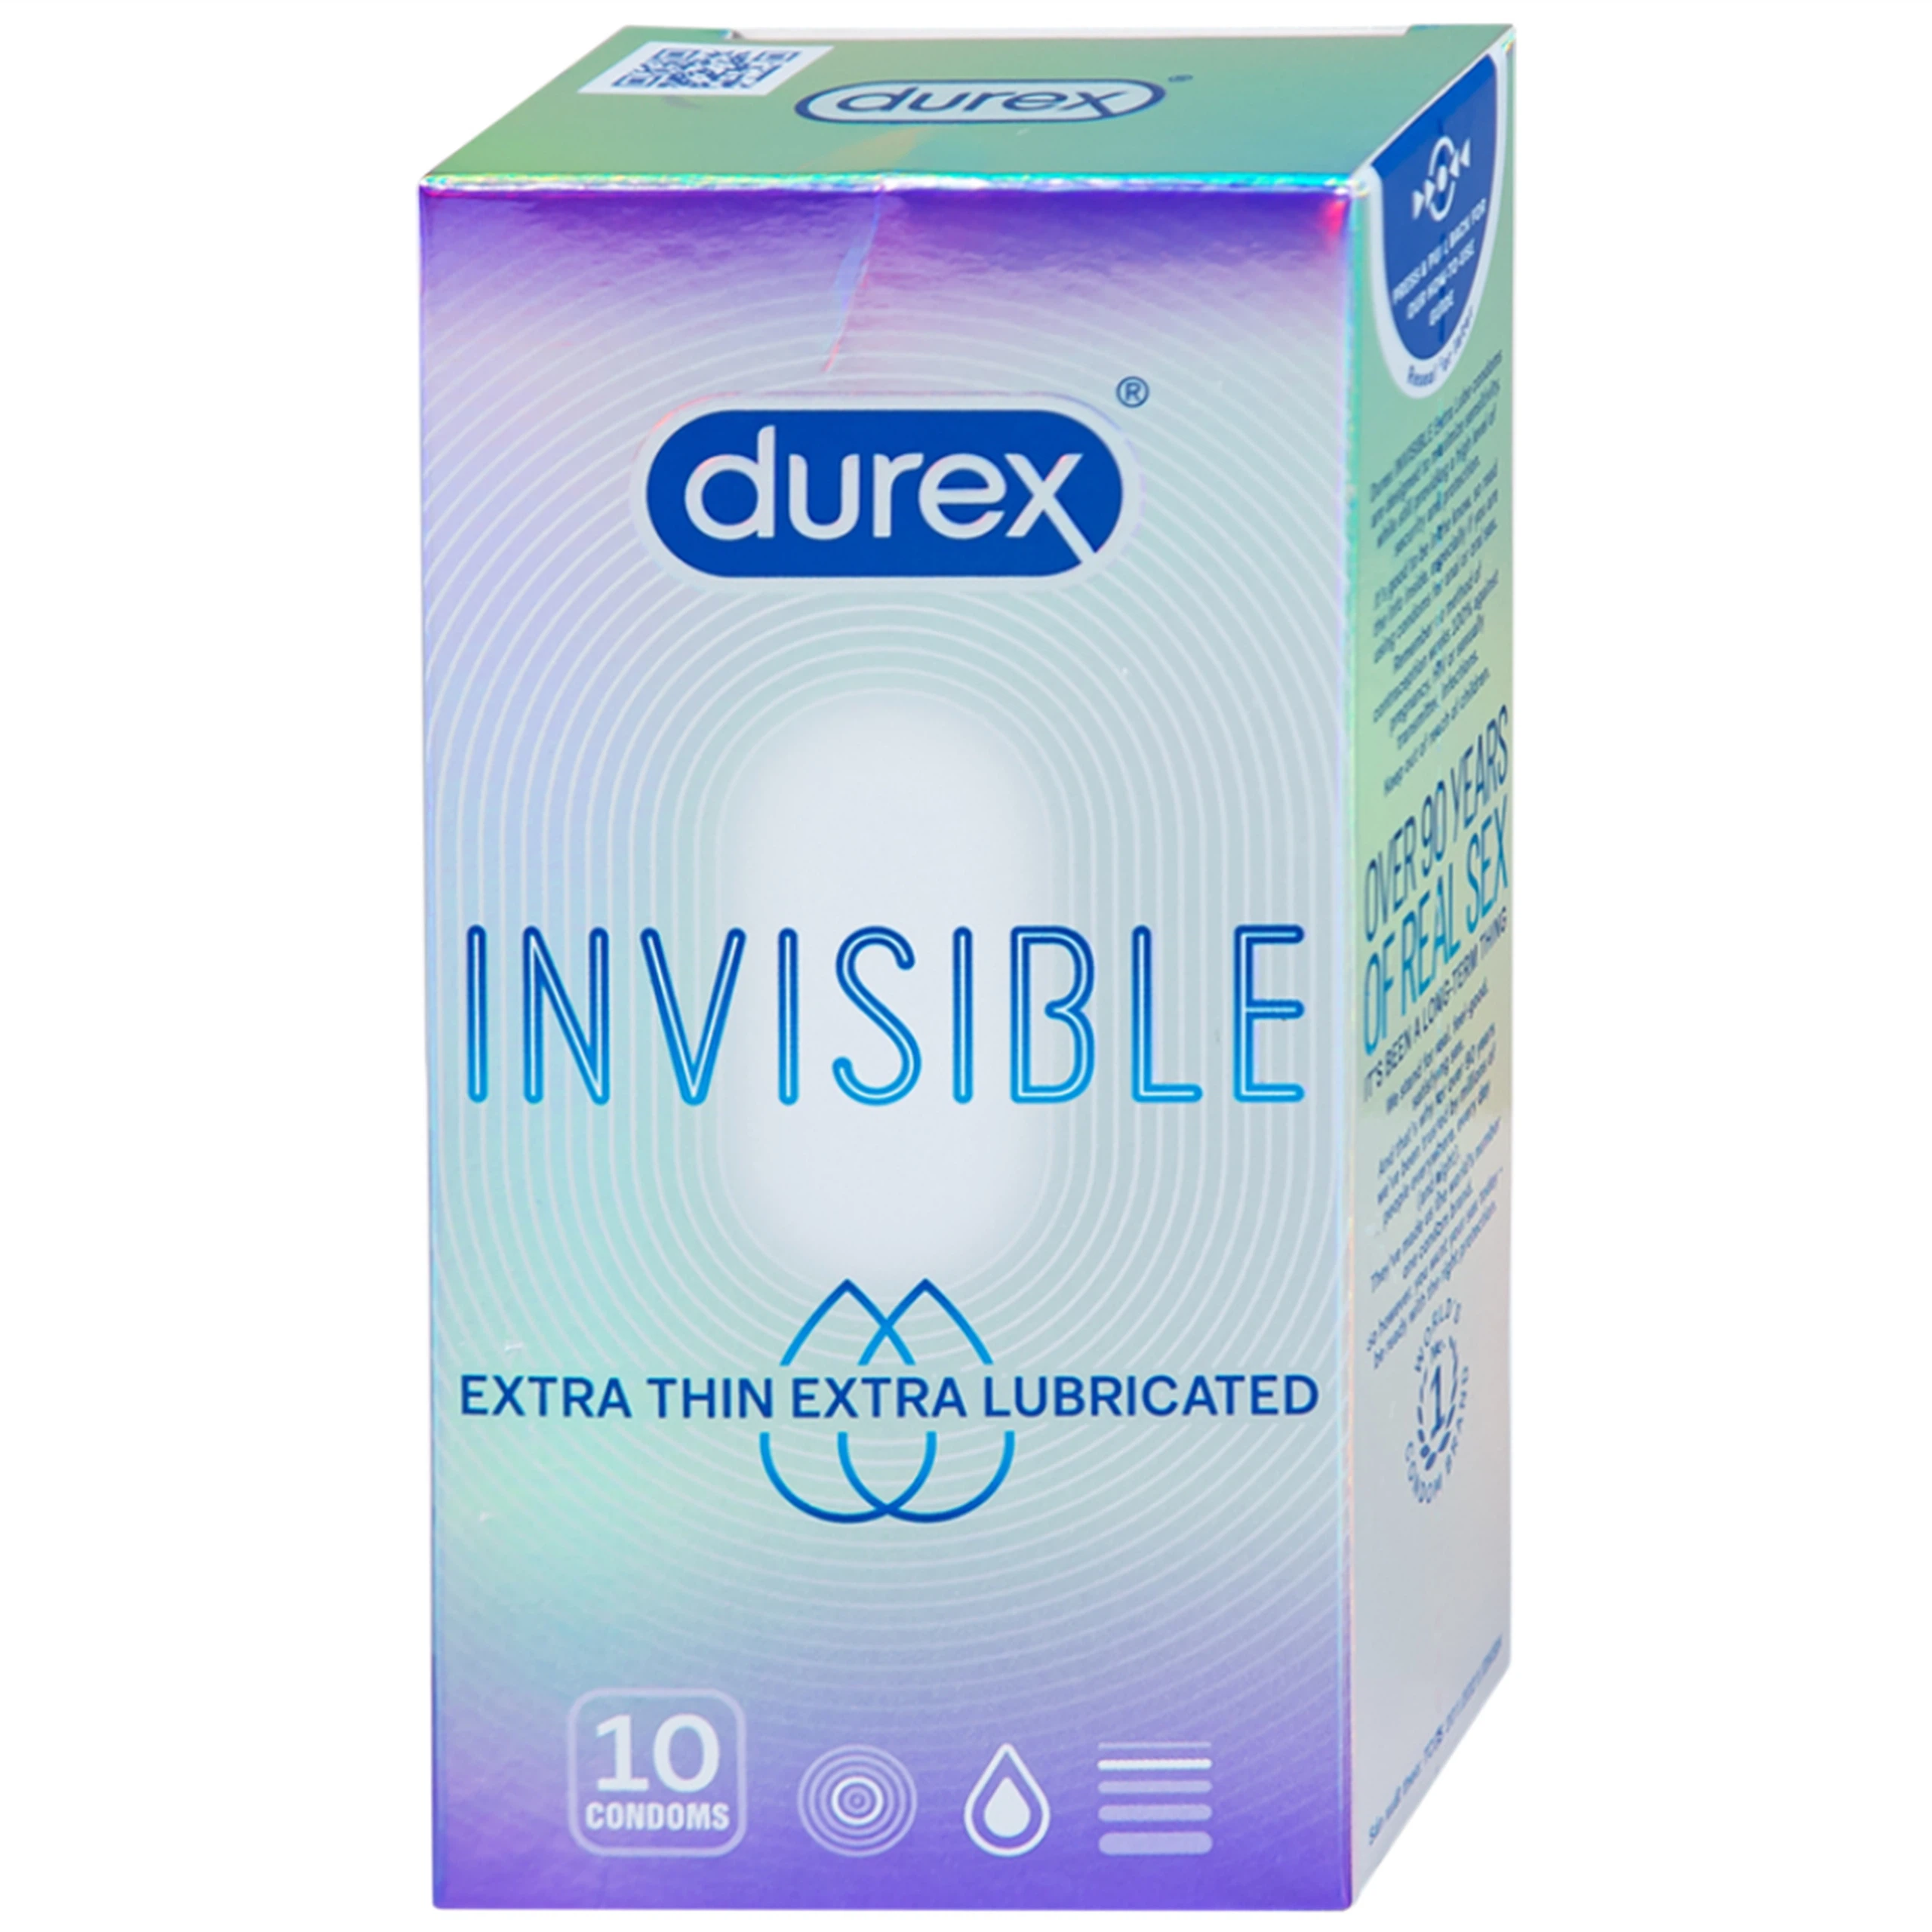 Bao cao su Durex Invisible Extra Thin Extra Lubricated siêu mỏng, nhiều chất bôi trơn (10 cái)